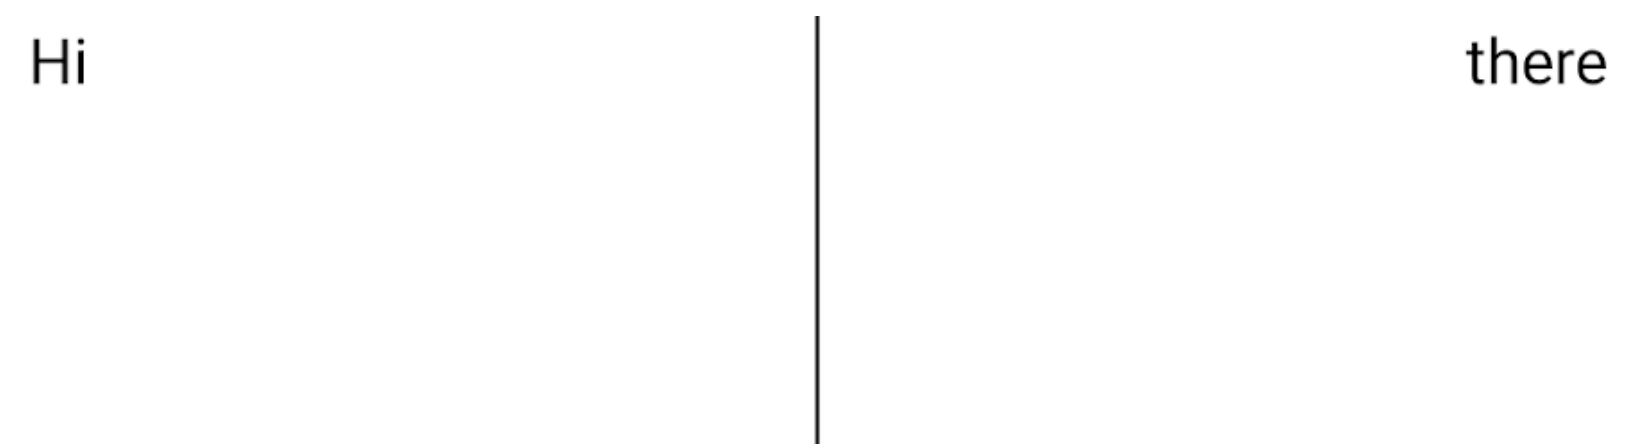 2 つのテキスト要素が横に並び、分割線で区切られていますが、分割線がテキストの下まで伸びています